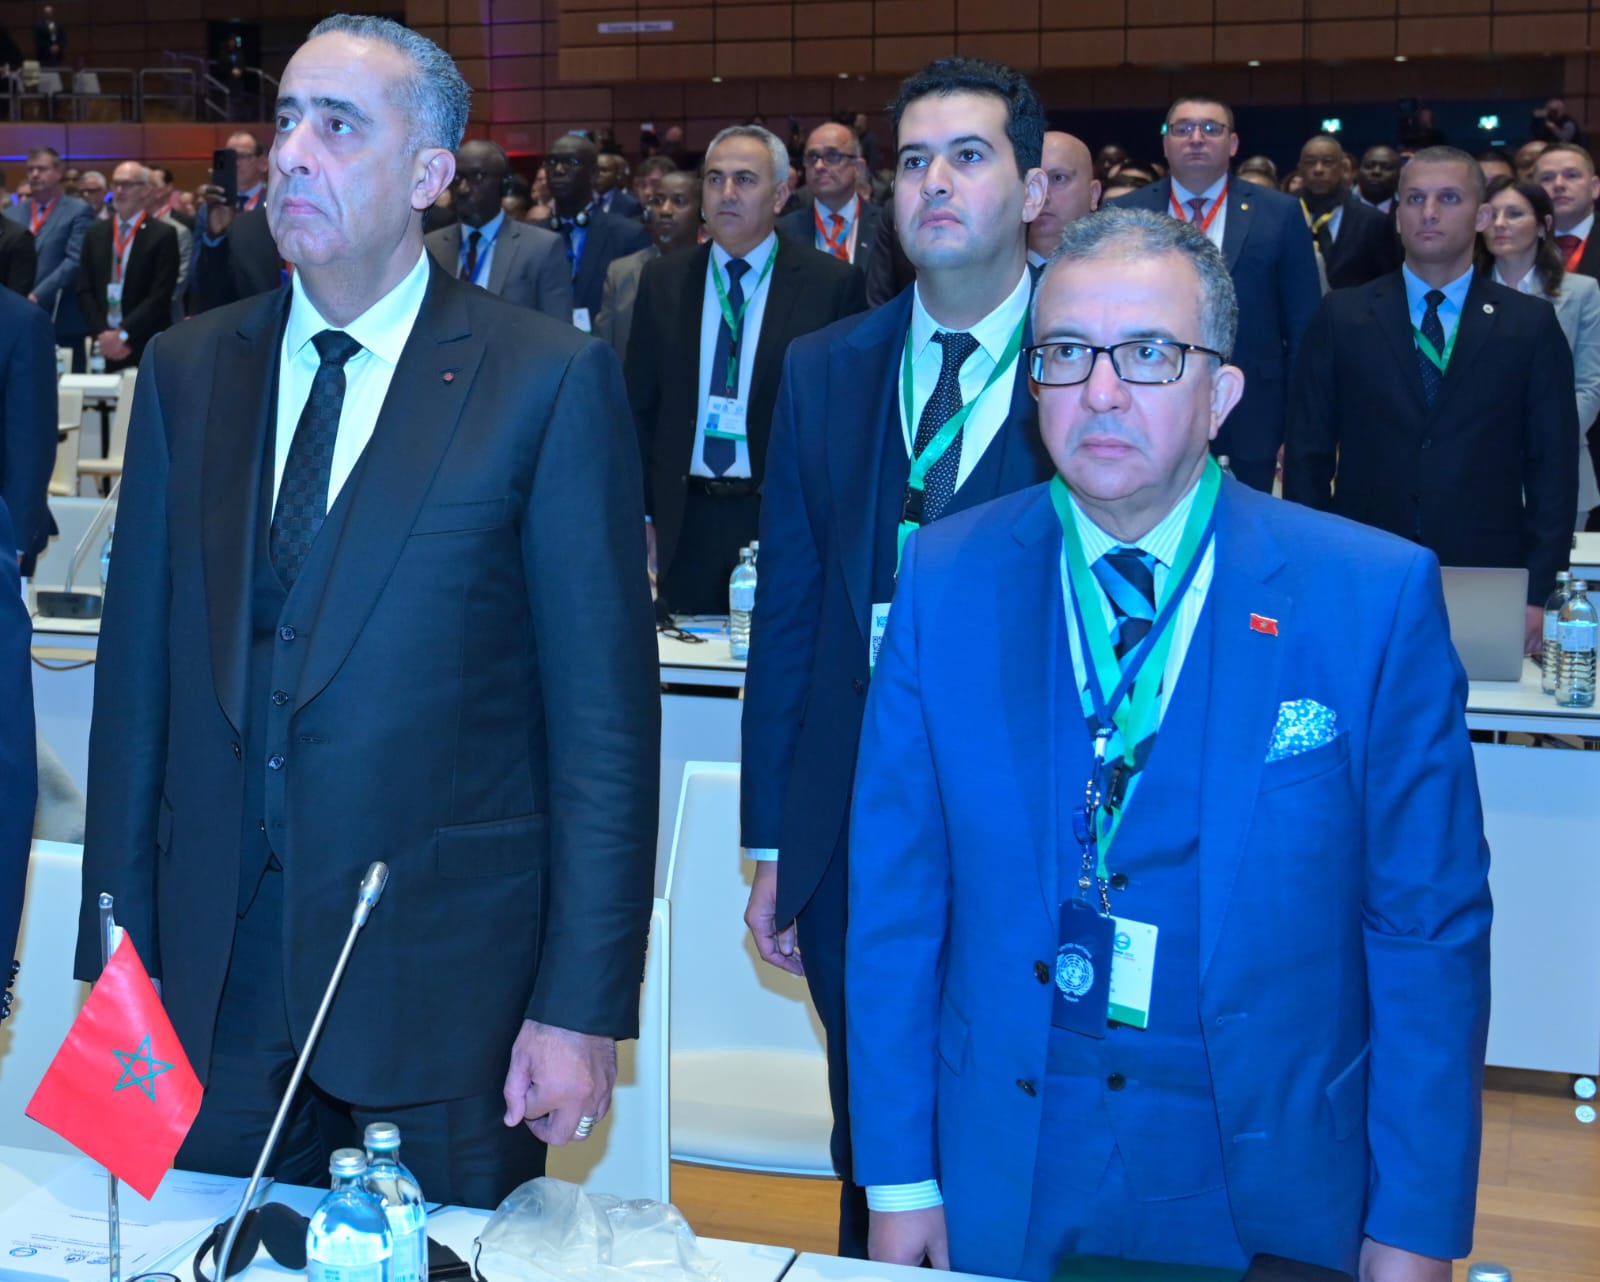 فيينا.. افتتاح الدورة الـ 91 للجمعية العامة للإنتربول بمشاركة المغرب